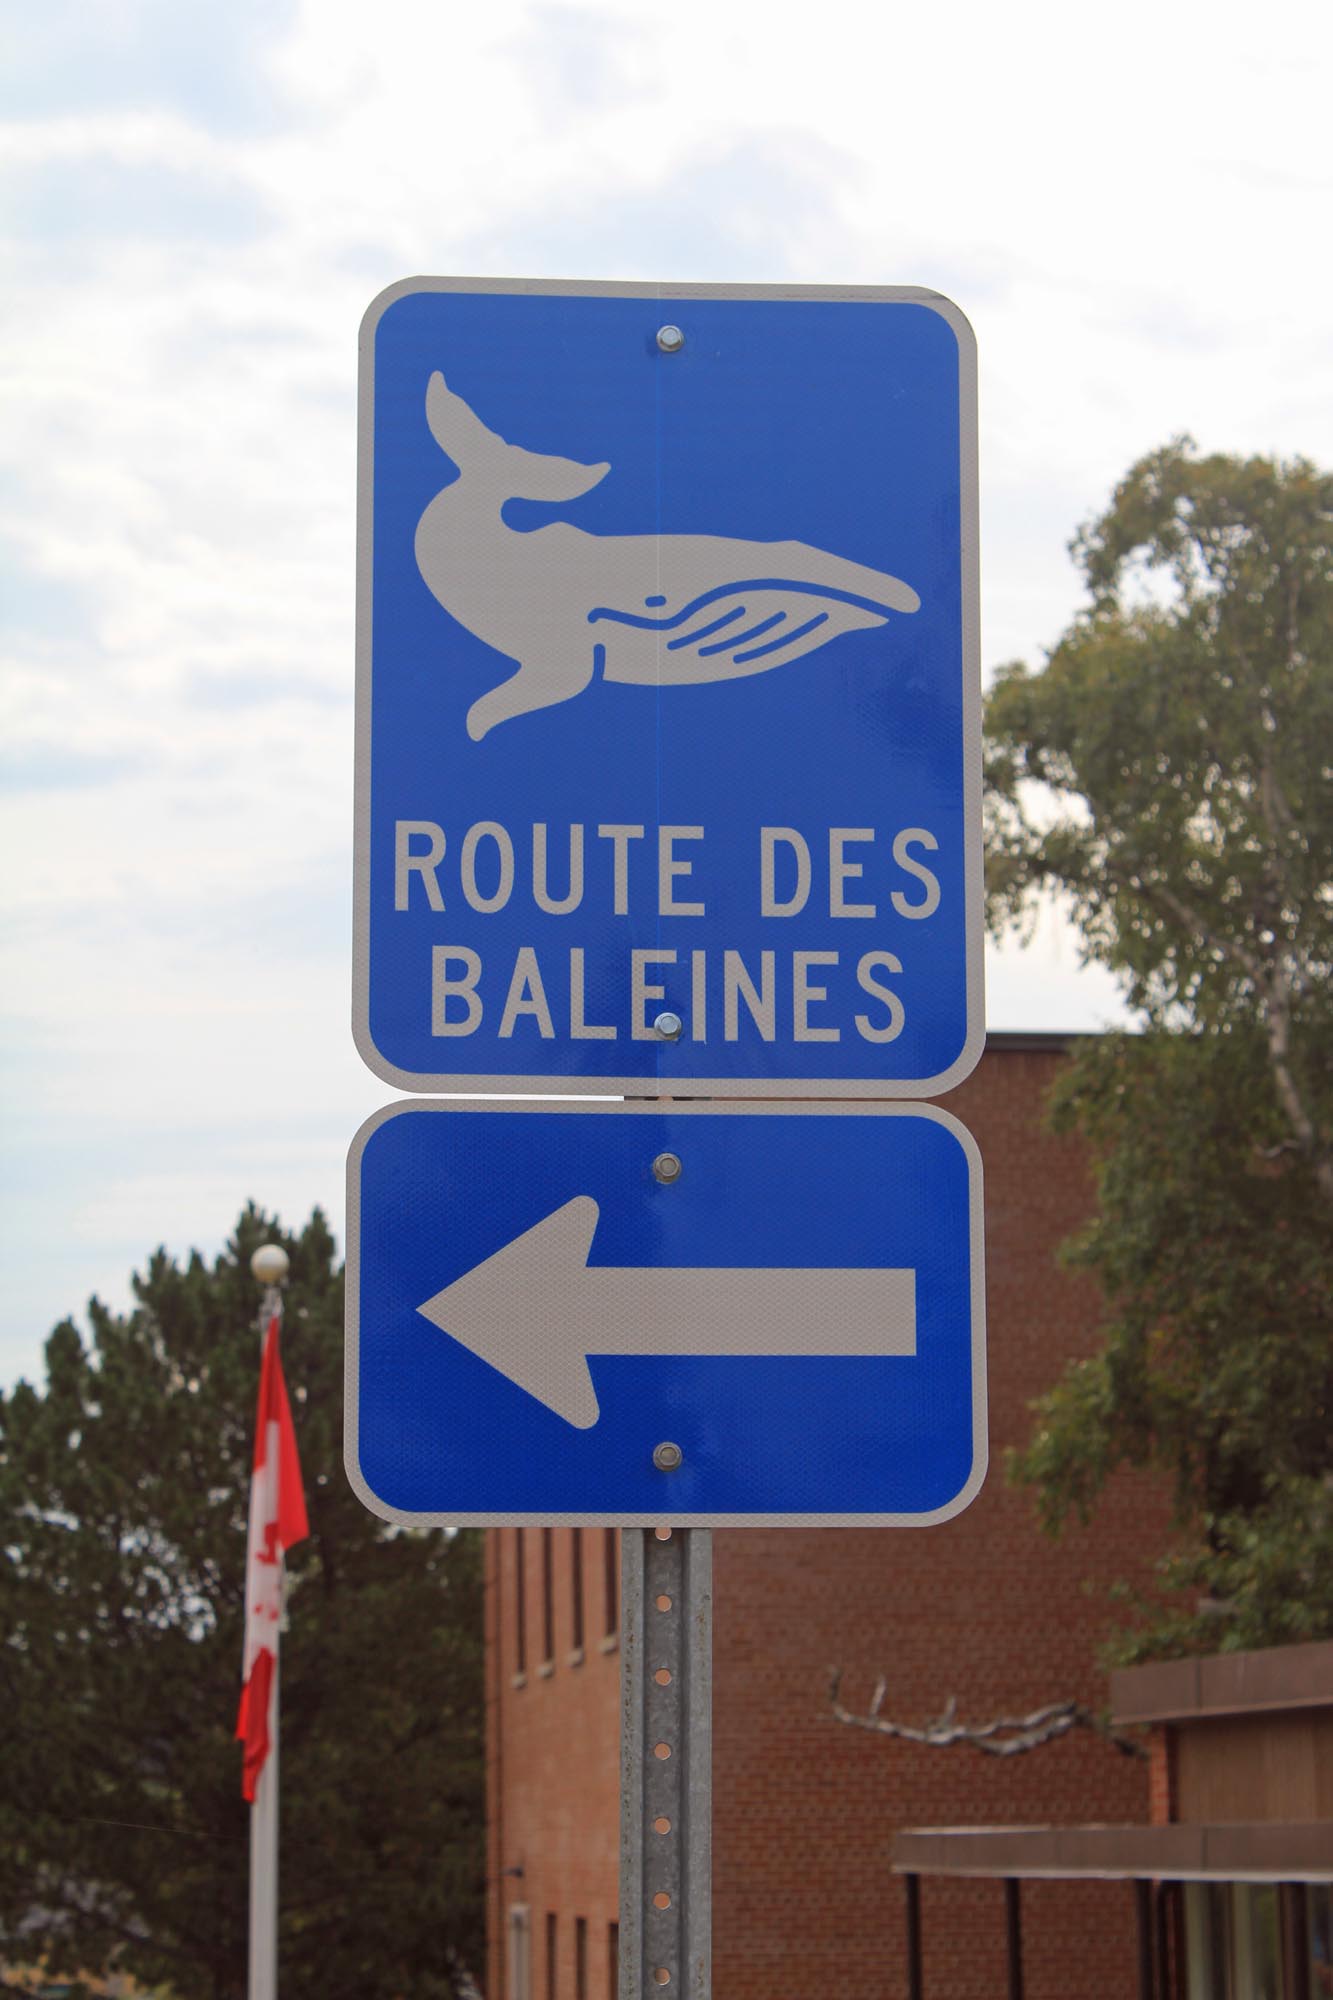 Route des baleines, Tadoussac